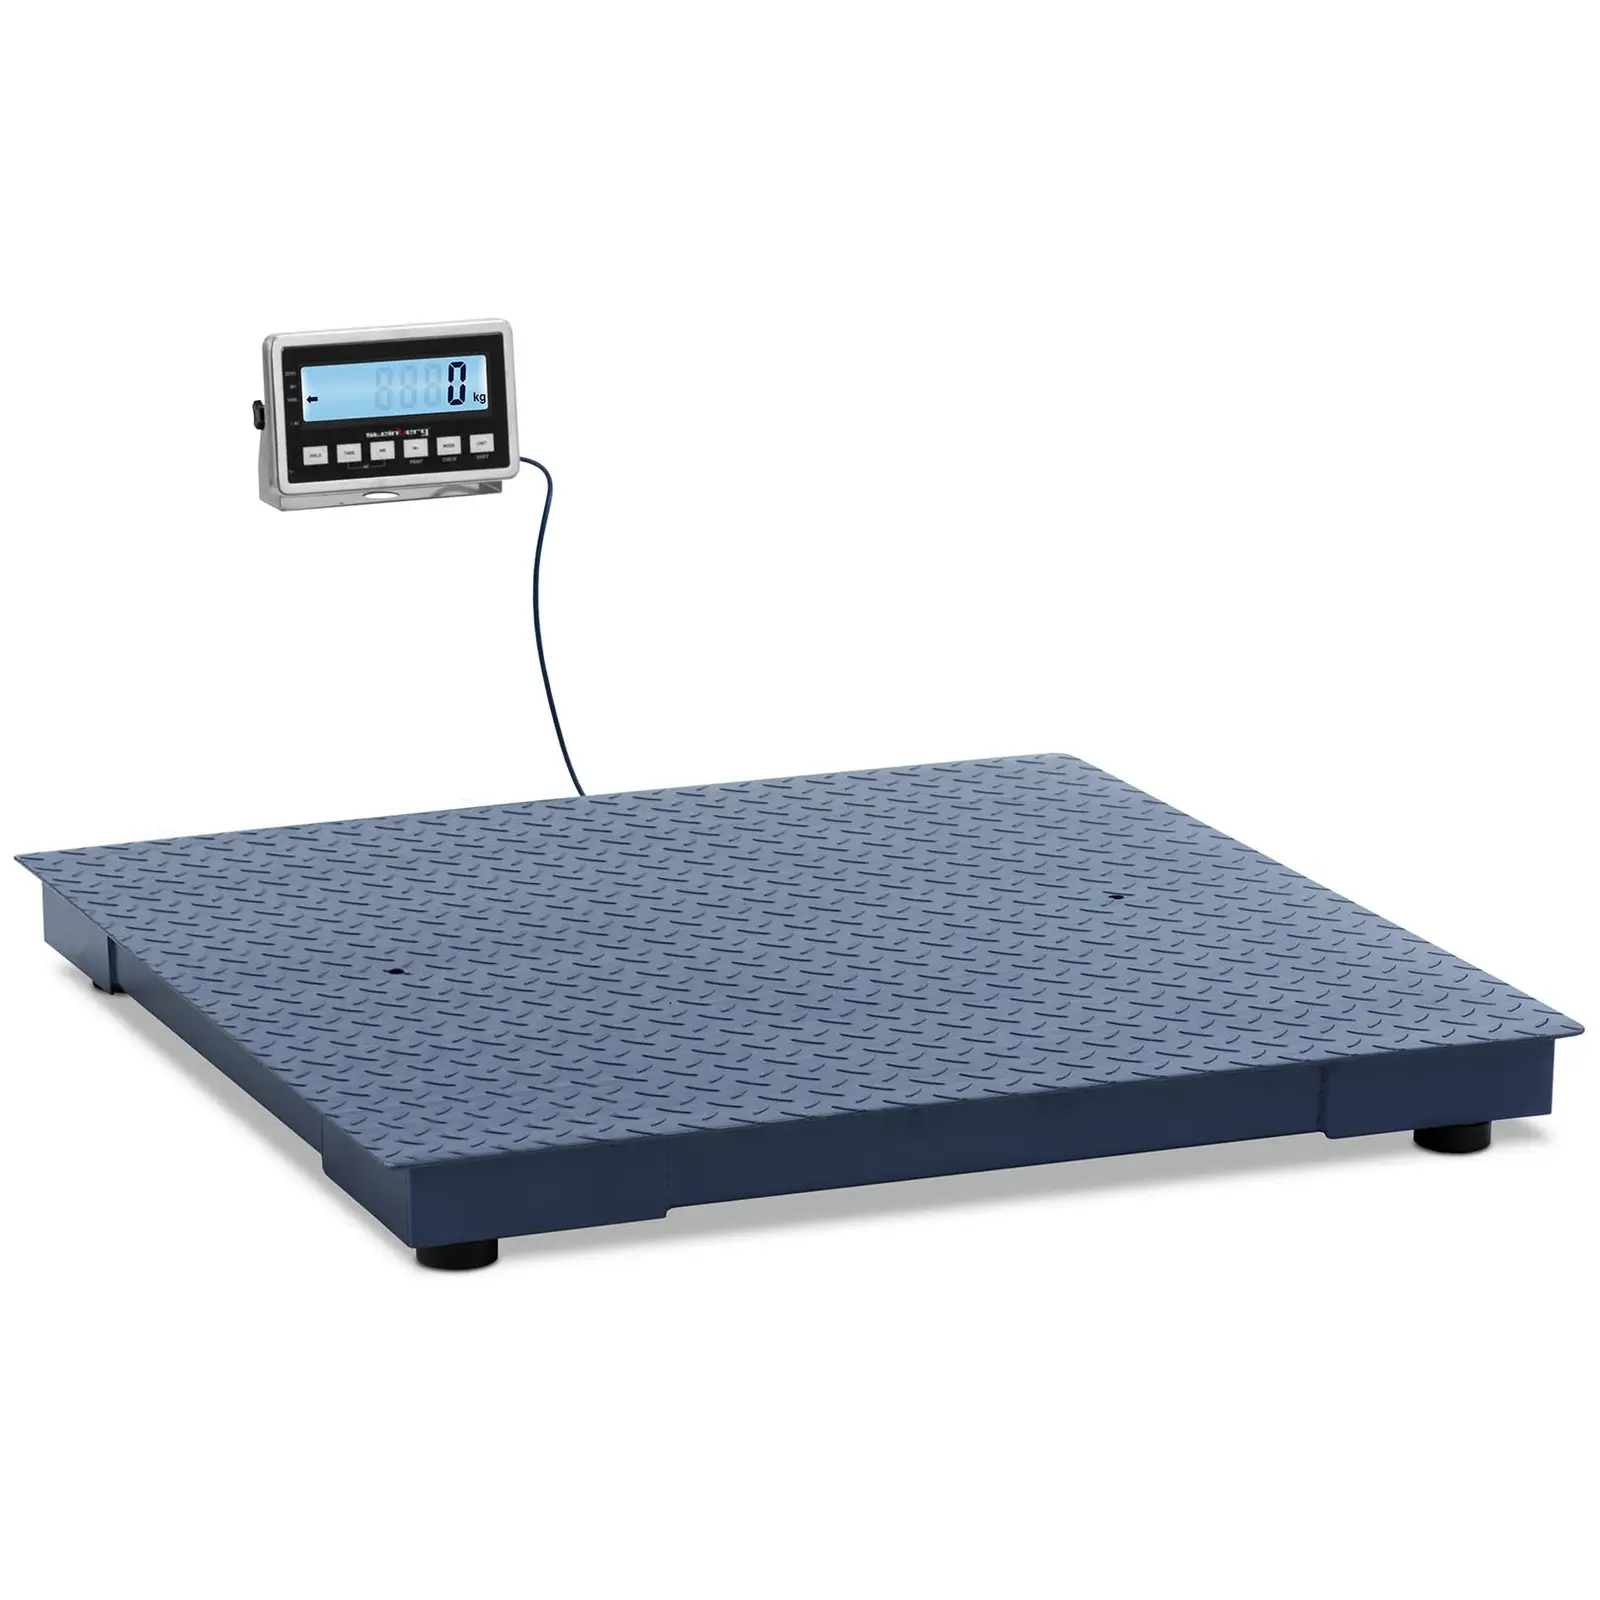 Podlahová váha - 3000 kg / 1 kg - 1000 x 1000 mm - LCD